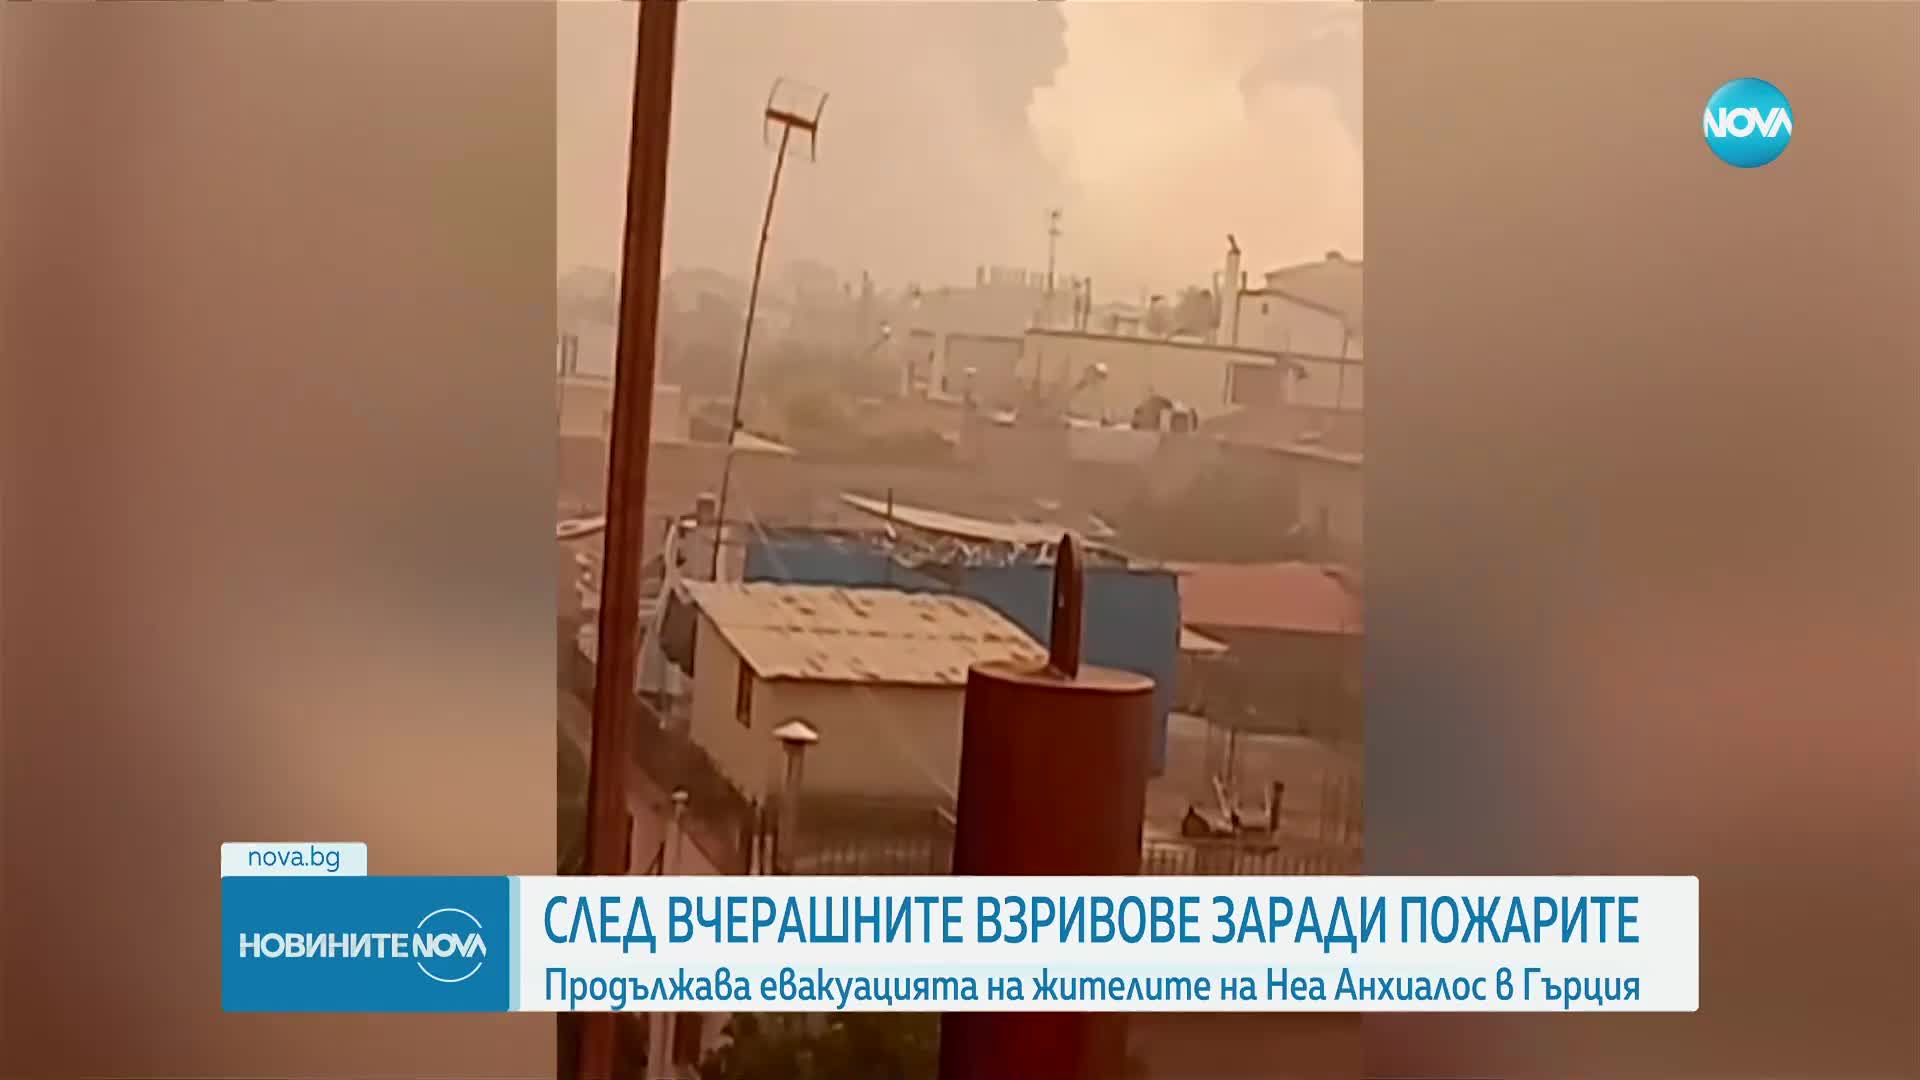 Пожарите в Гърция: Приключи евакуацията в Неа Анхиалос след взрив на складове